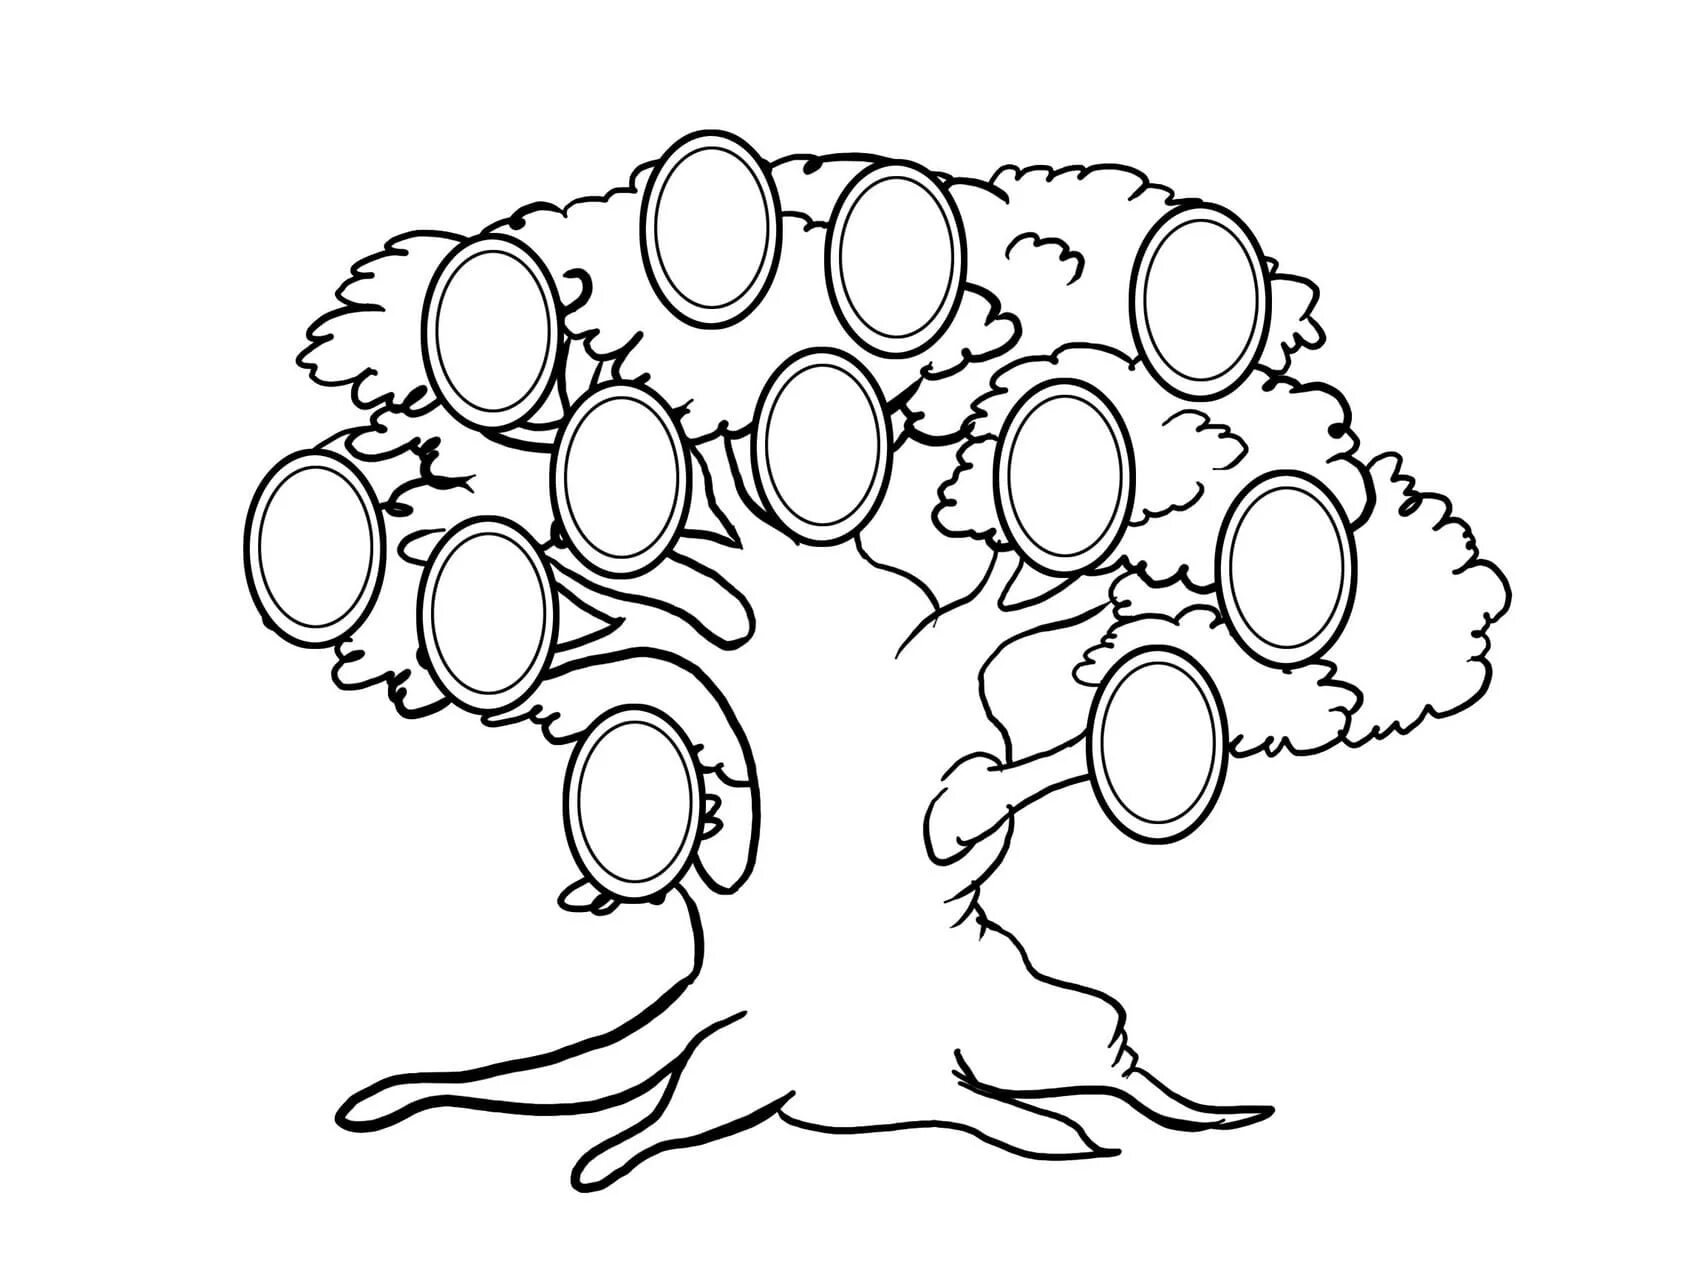 Family tree #5